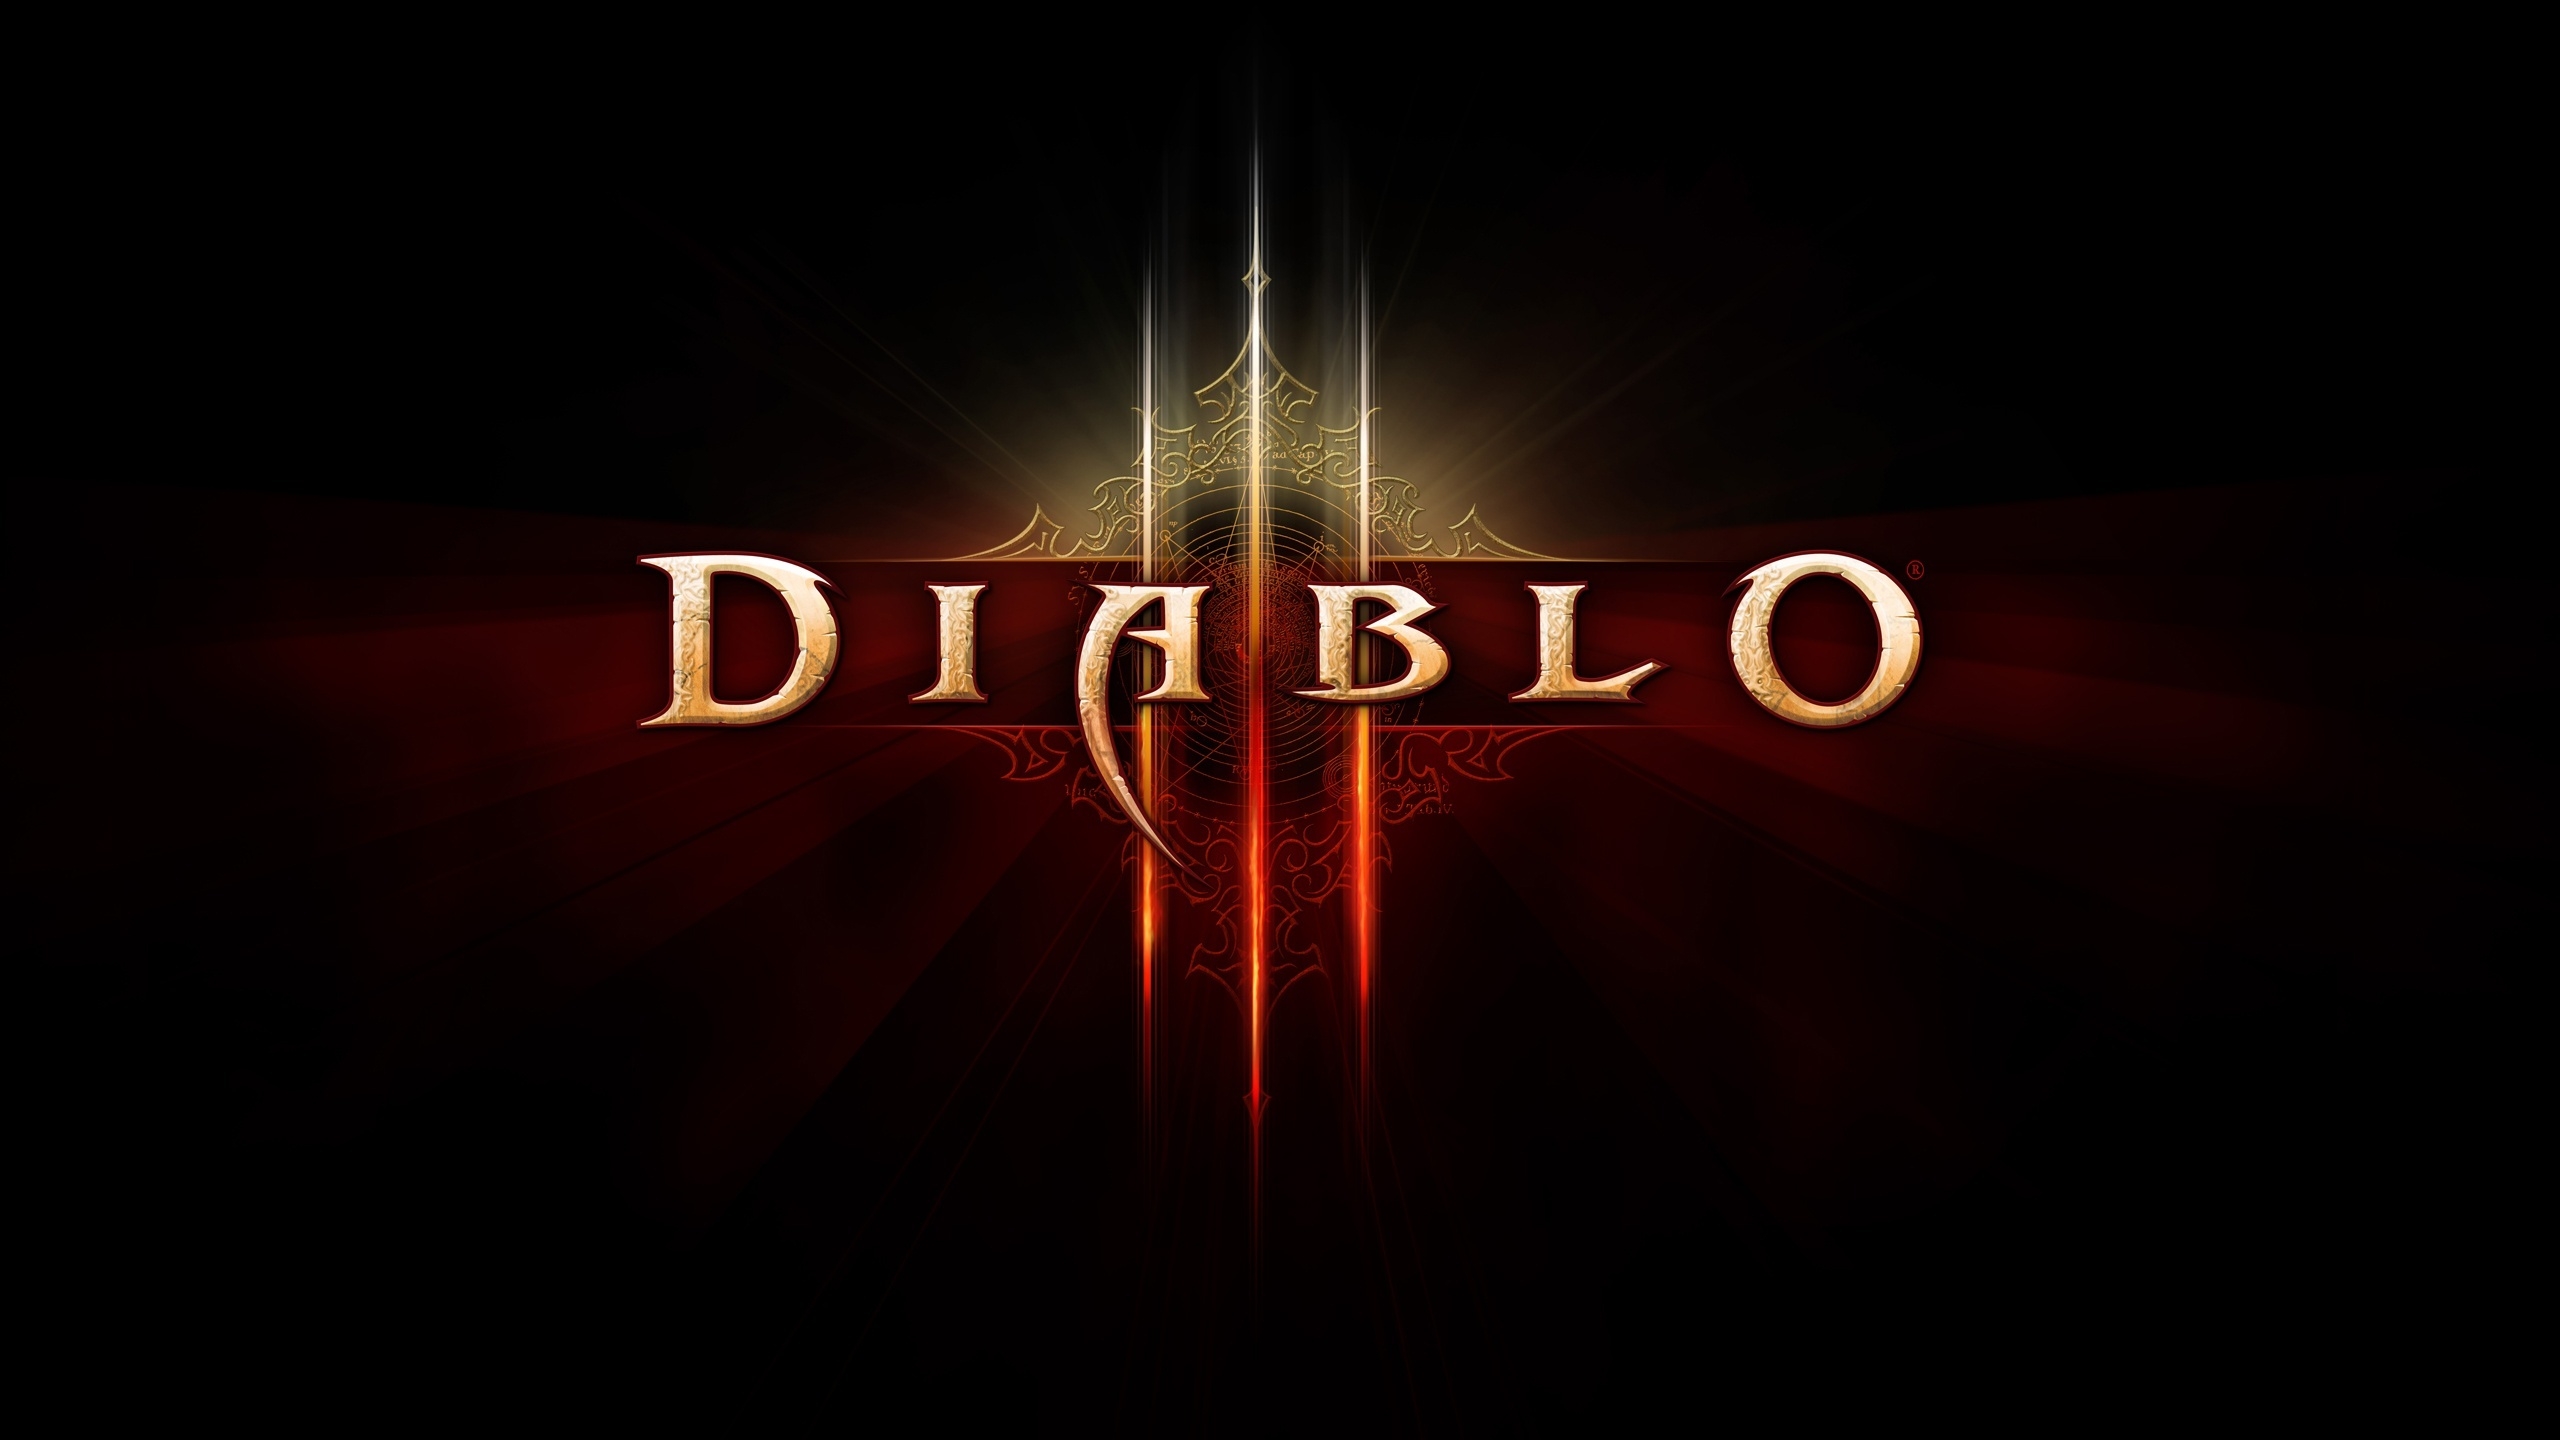 Diablo 3 Logo for 2560x1440 HDTV resolution